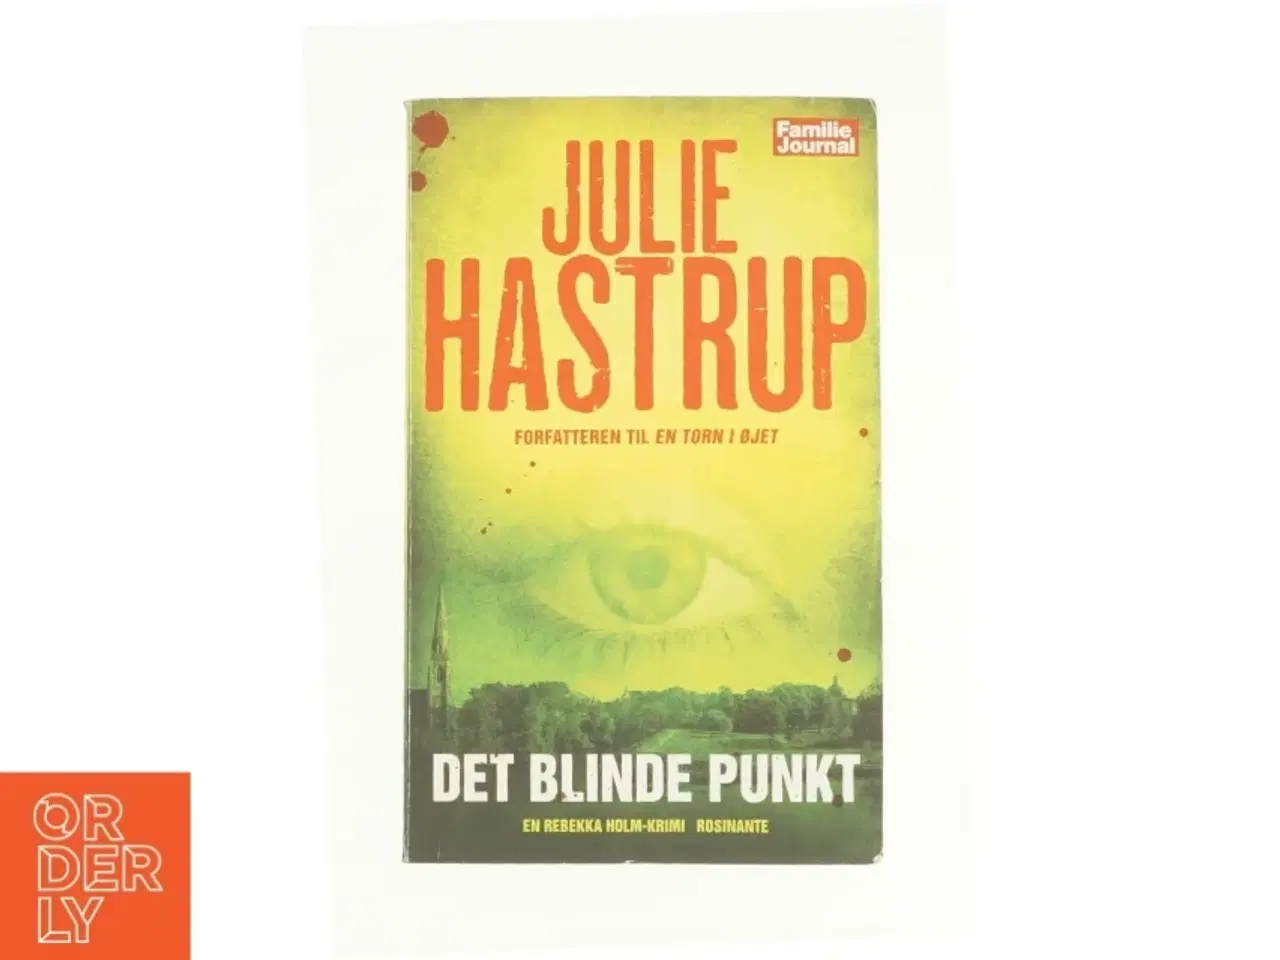 Billede 1 - Det Blinde Punkt [the Blind Spot] Listen: Play Sample Det Blinde Punkt [the Blind Spot] af Julie Hastrup (Bog)